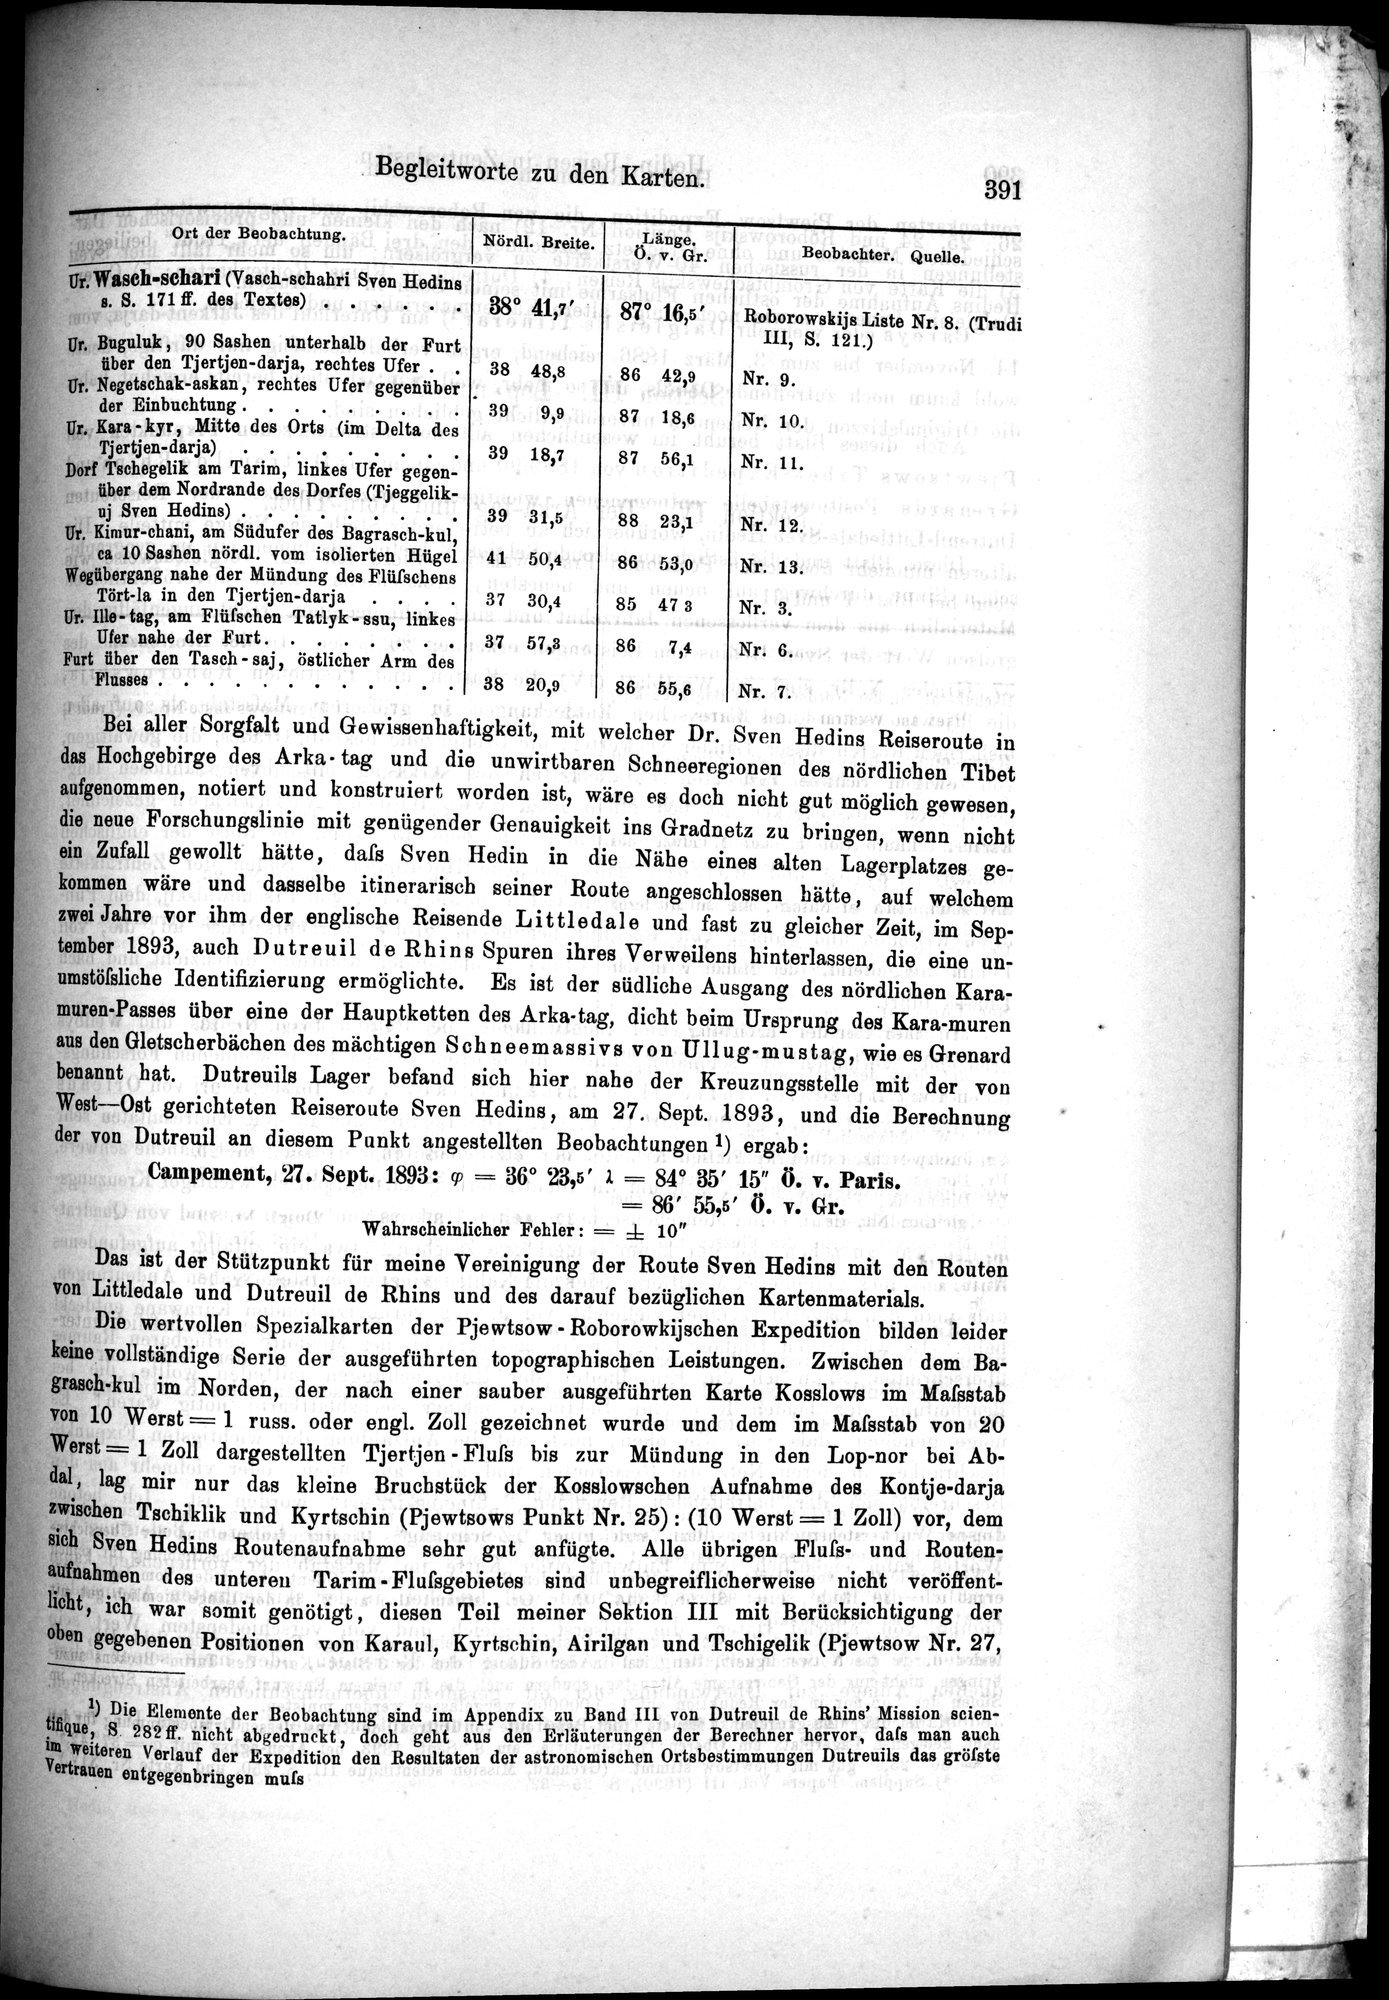 Die Geographische-Wissenschaftlichen Ergebnisse meiner Reisen in Zentralasien, 1894-1897 : vol.1 / Page 403 (Grayscale High Resolution Image)